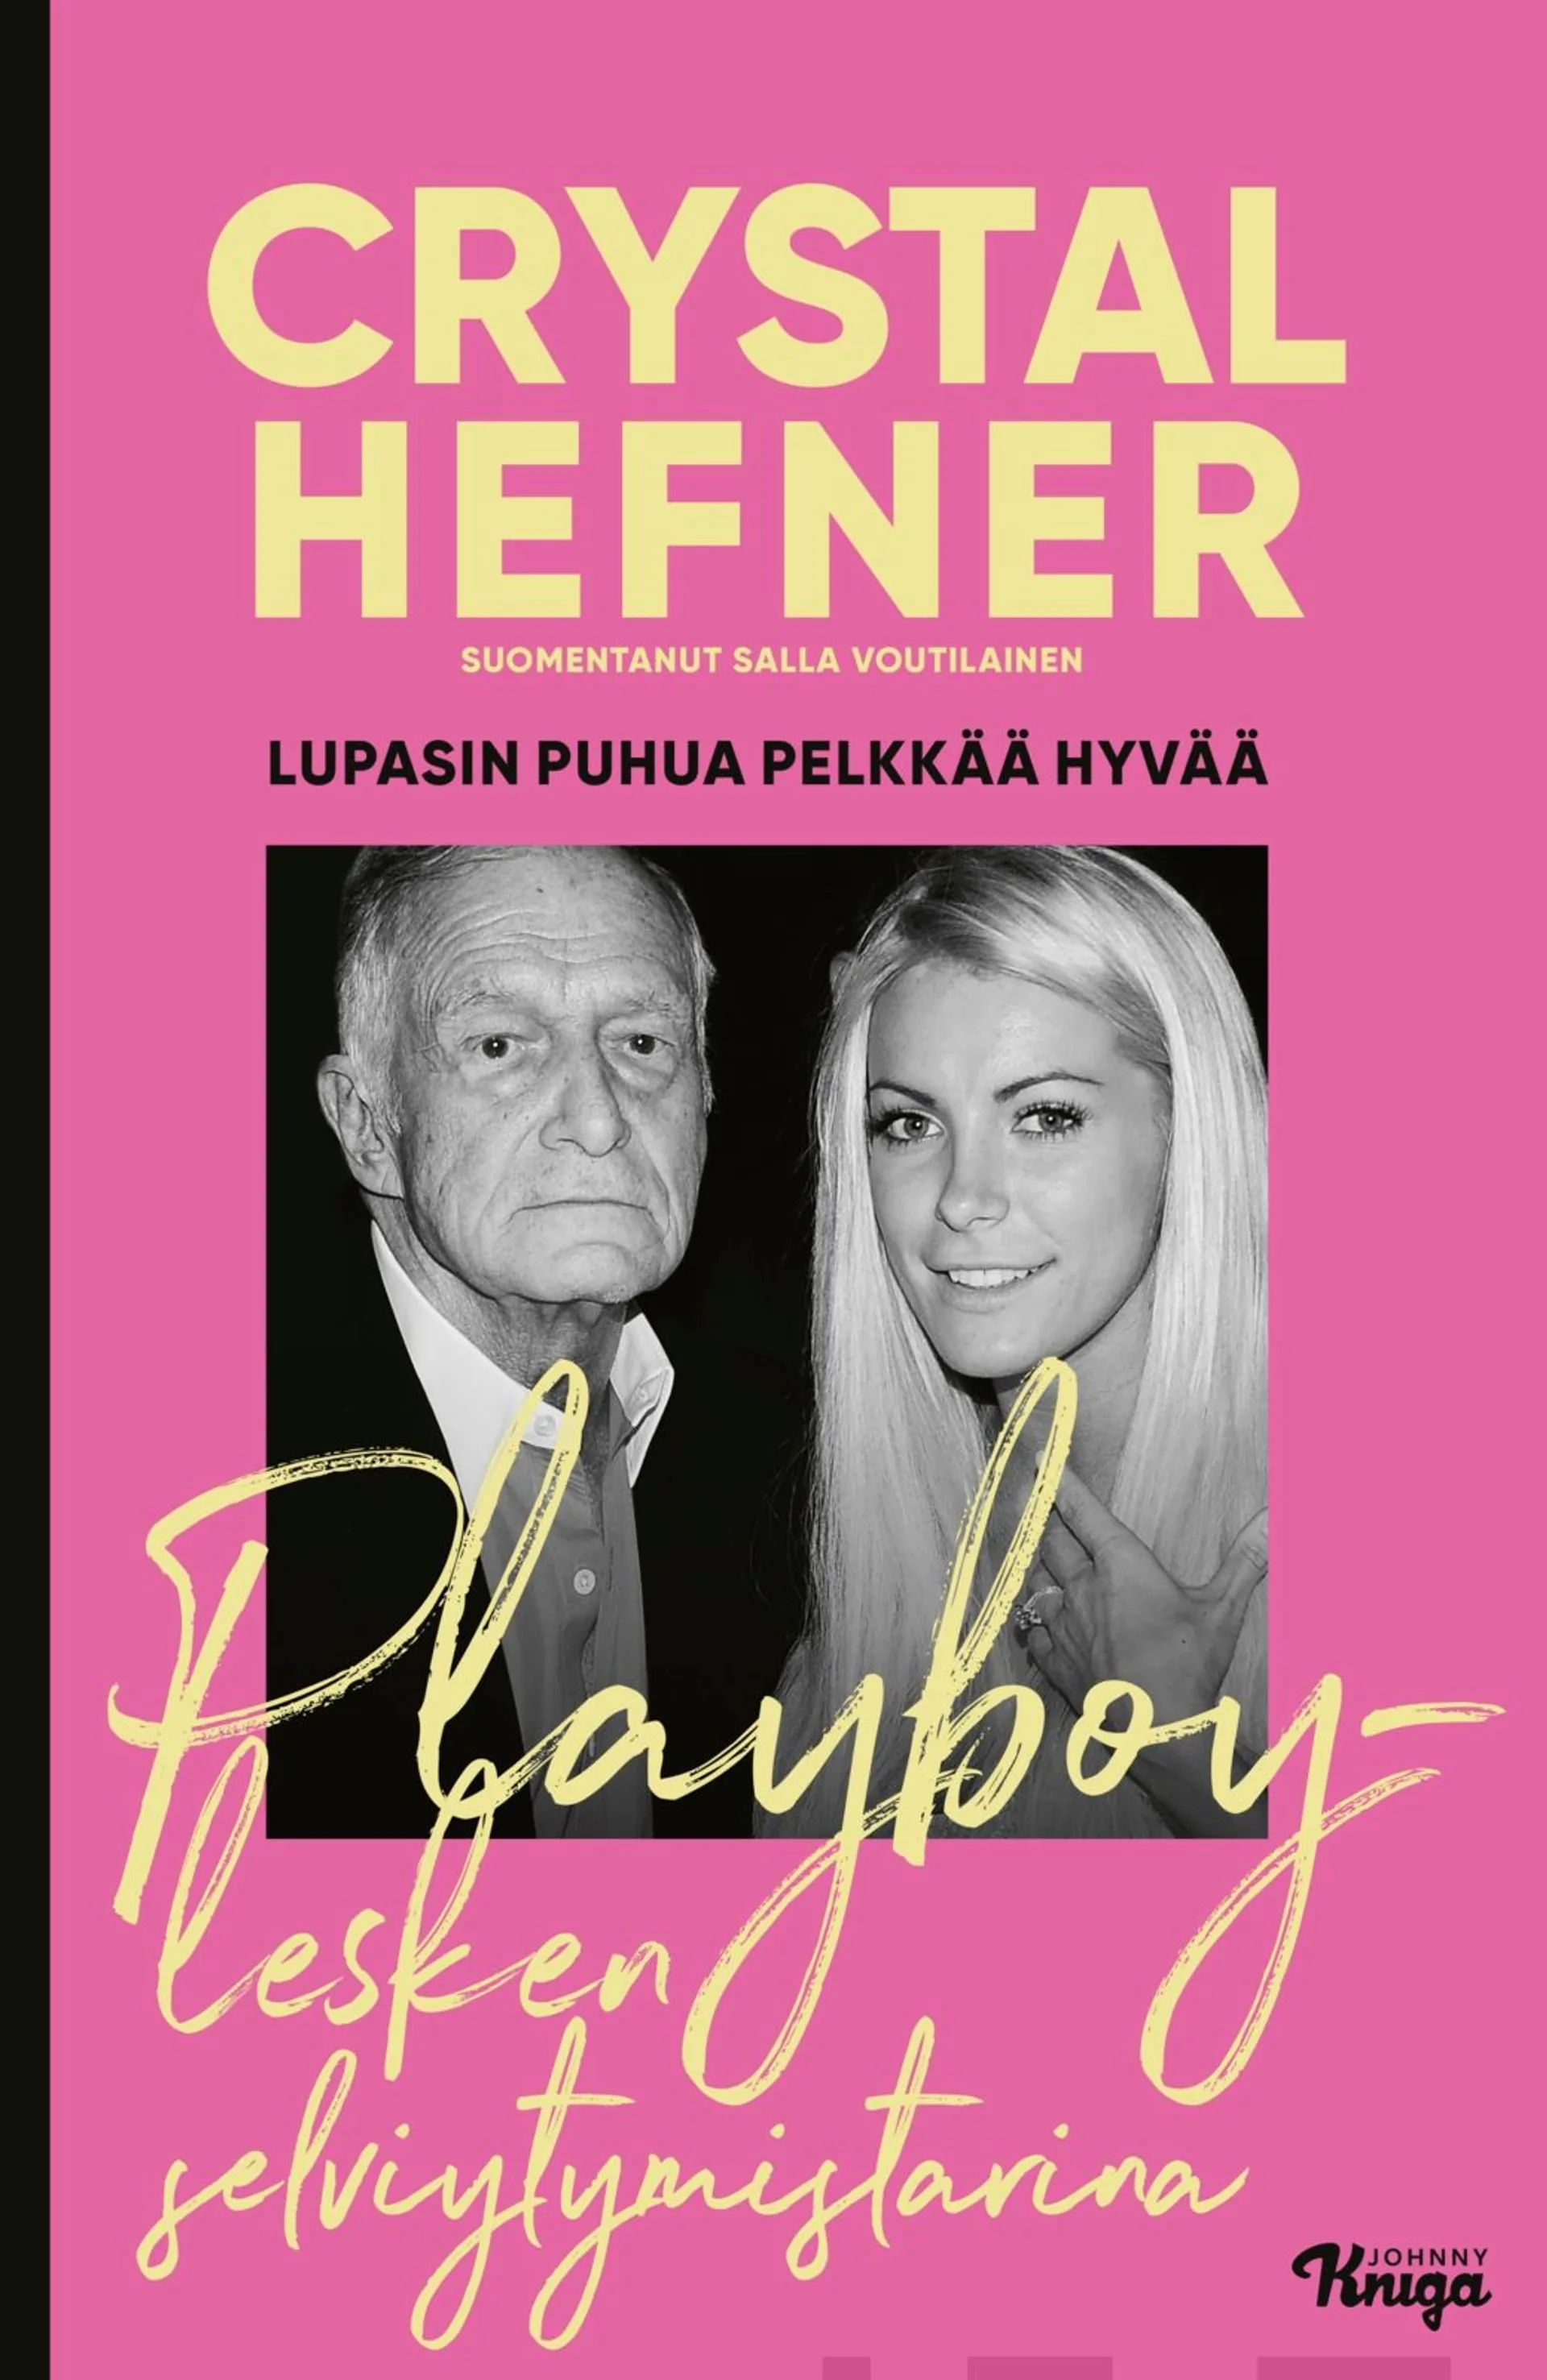 Hefner, Lupasin puhua pelkkää hyvää - Playboy-lesken selviytymistarina